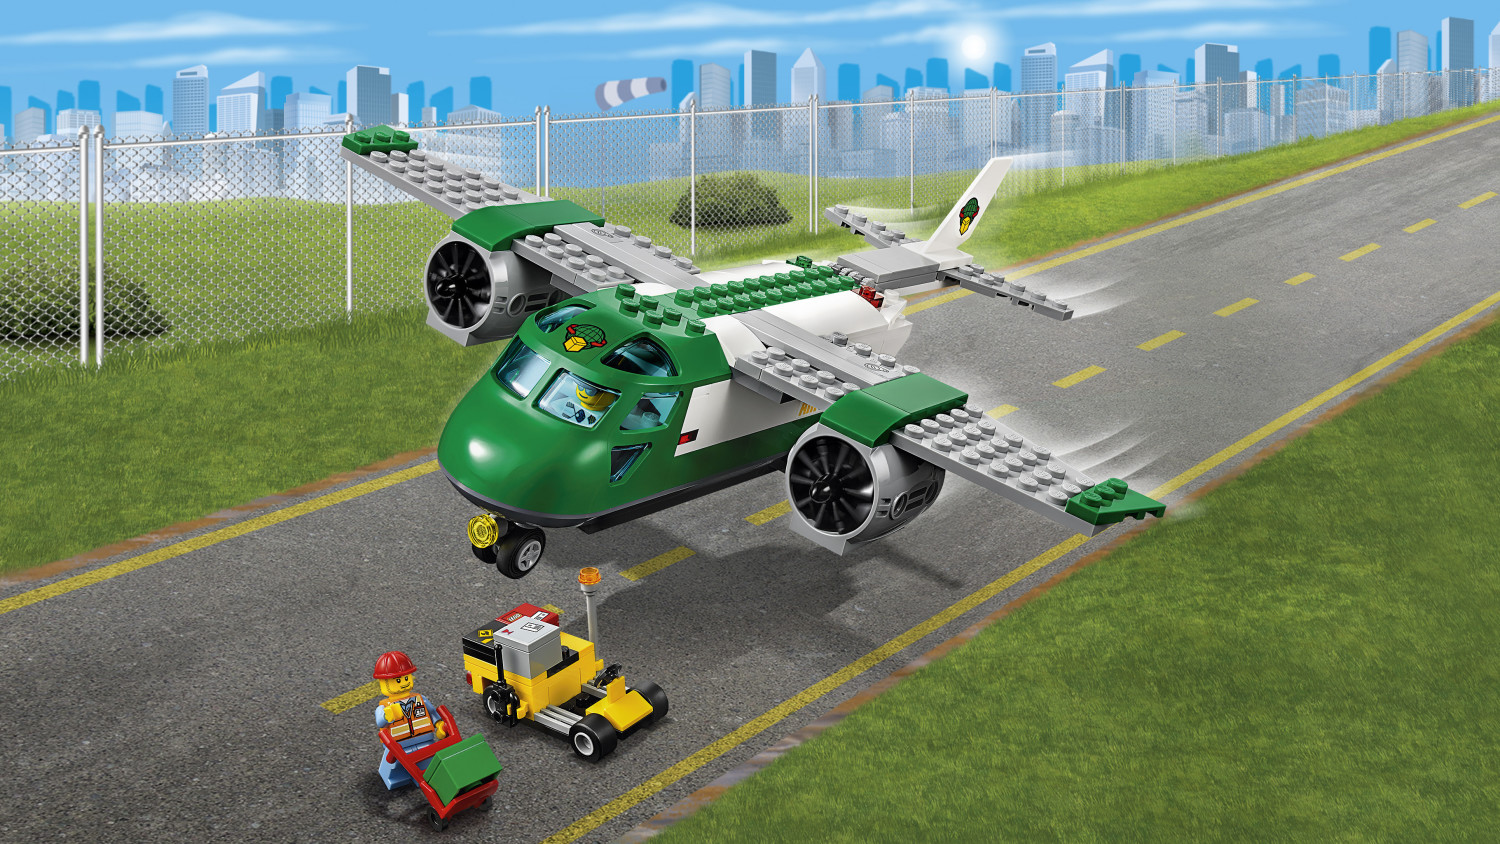 Lego - LEgO City Airport 60101 Kit de construction d'avion cargo pour  aéroport (157 pièces) - Briques et blocs - Rue du Commerce